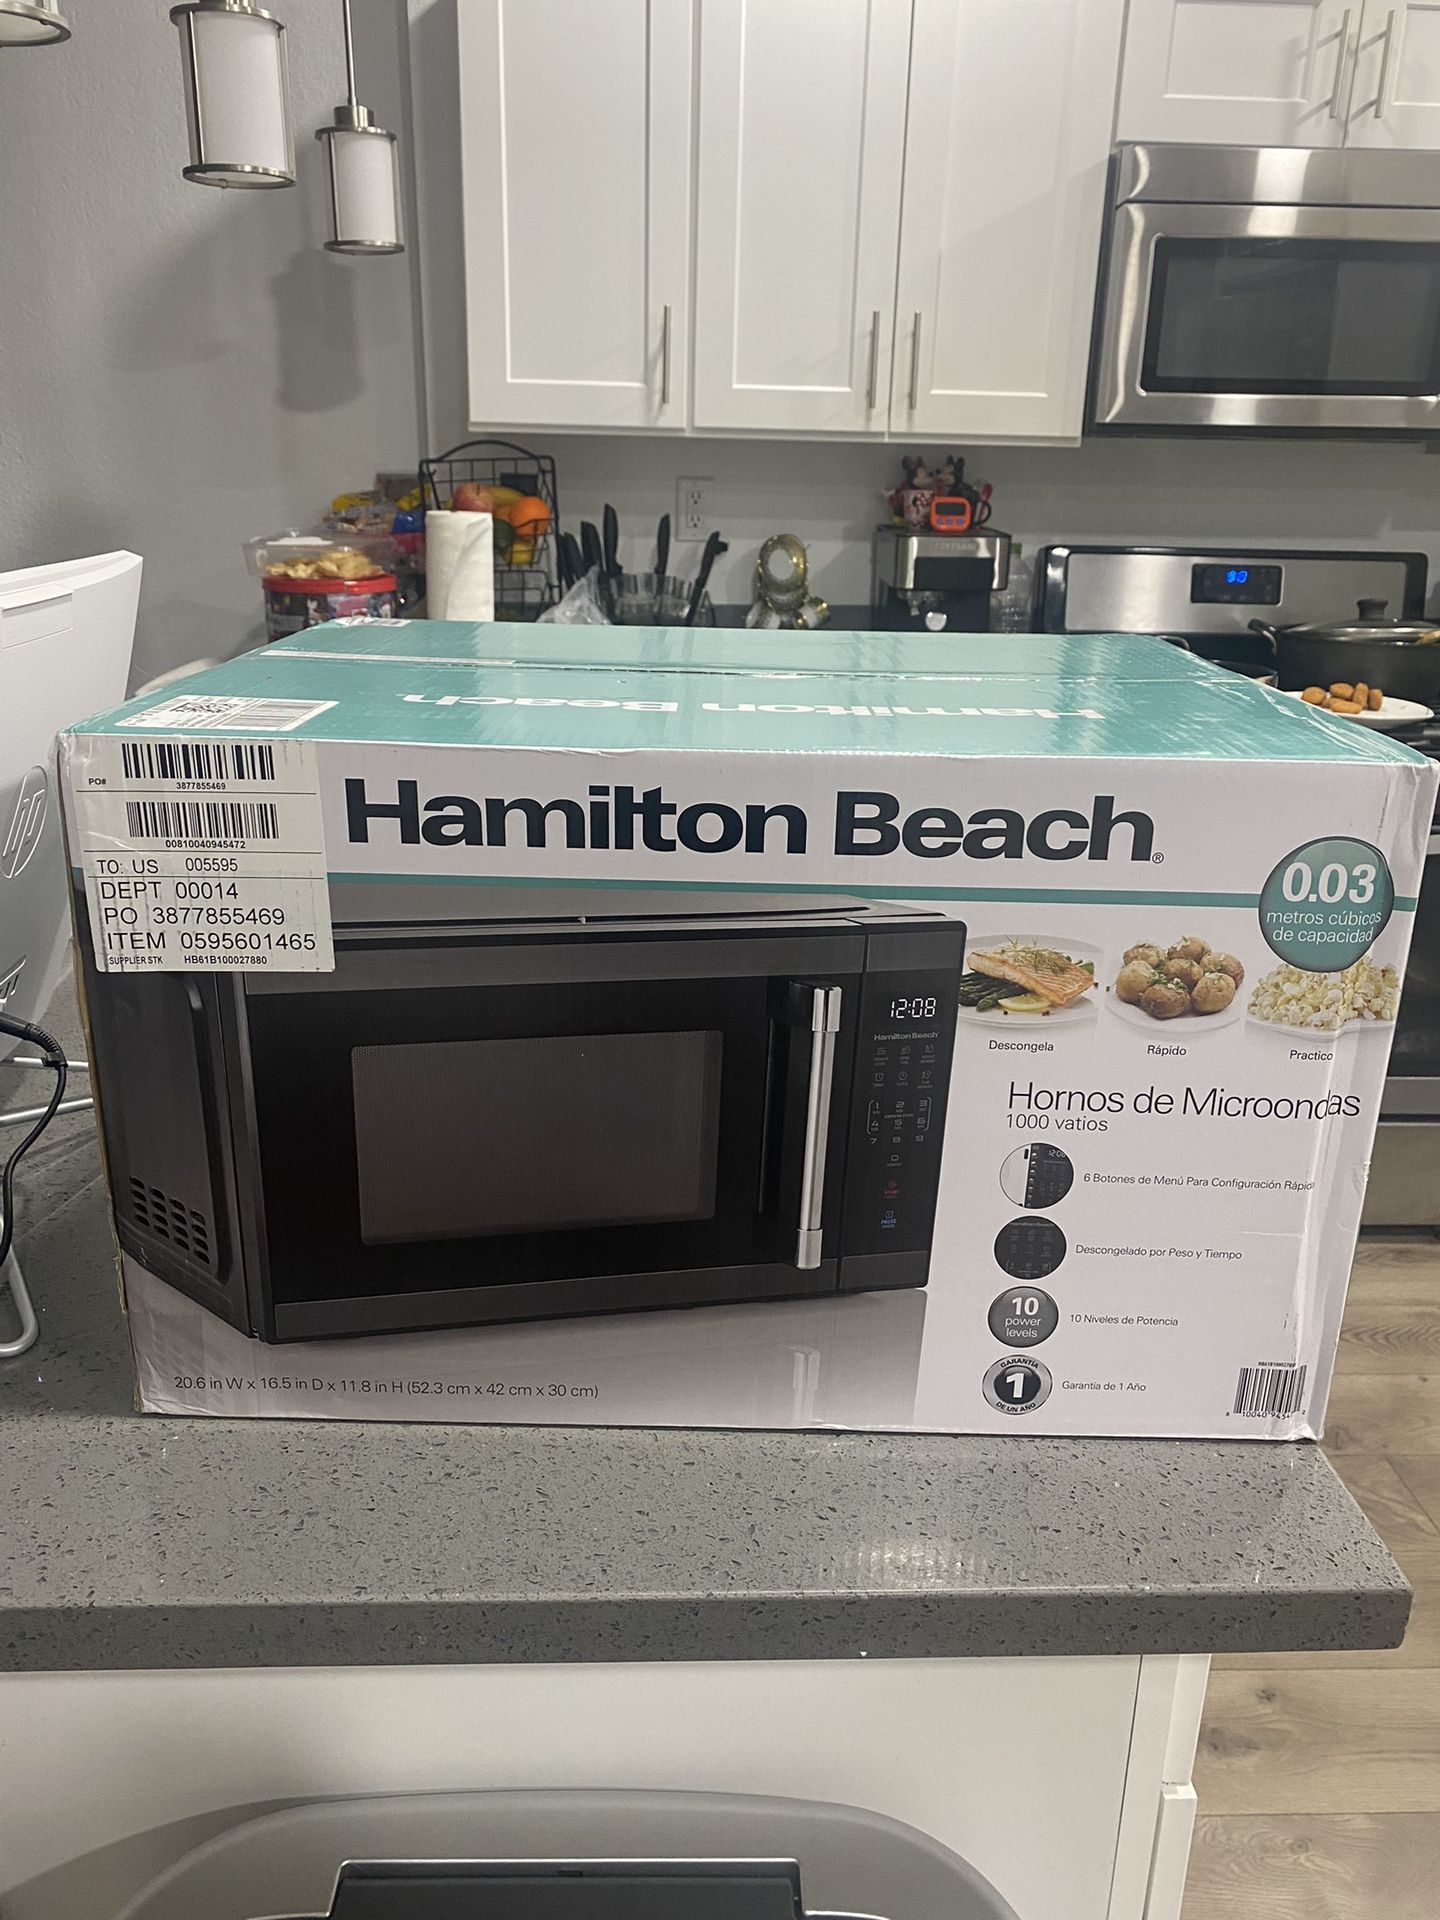 Hamilton Beach Microwave, Appliances